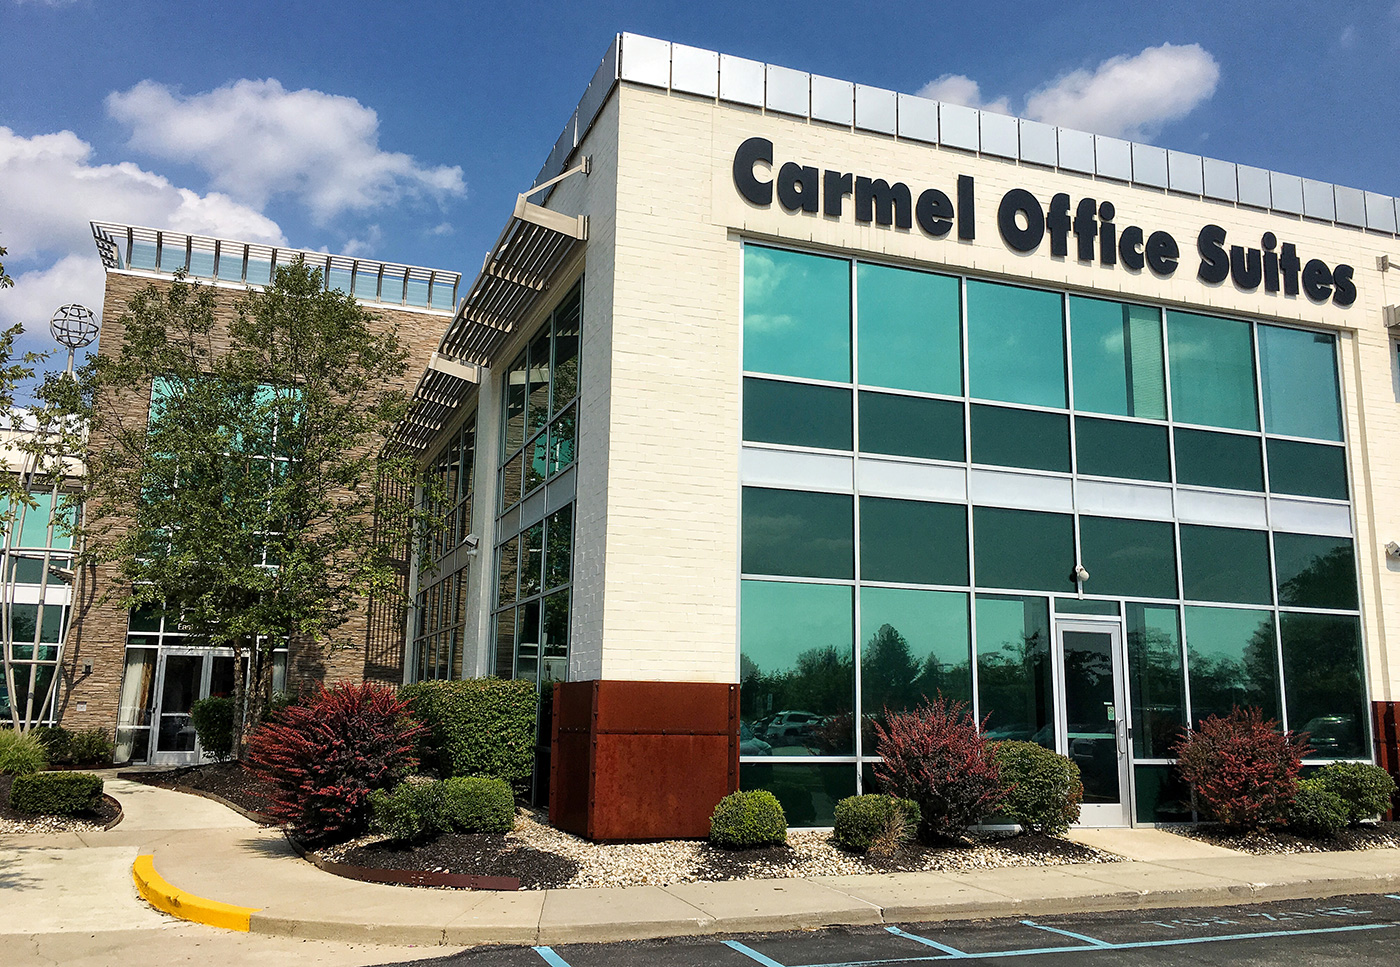 Carmel Office Suites